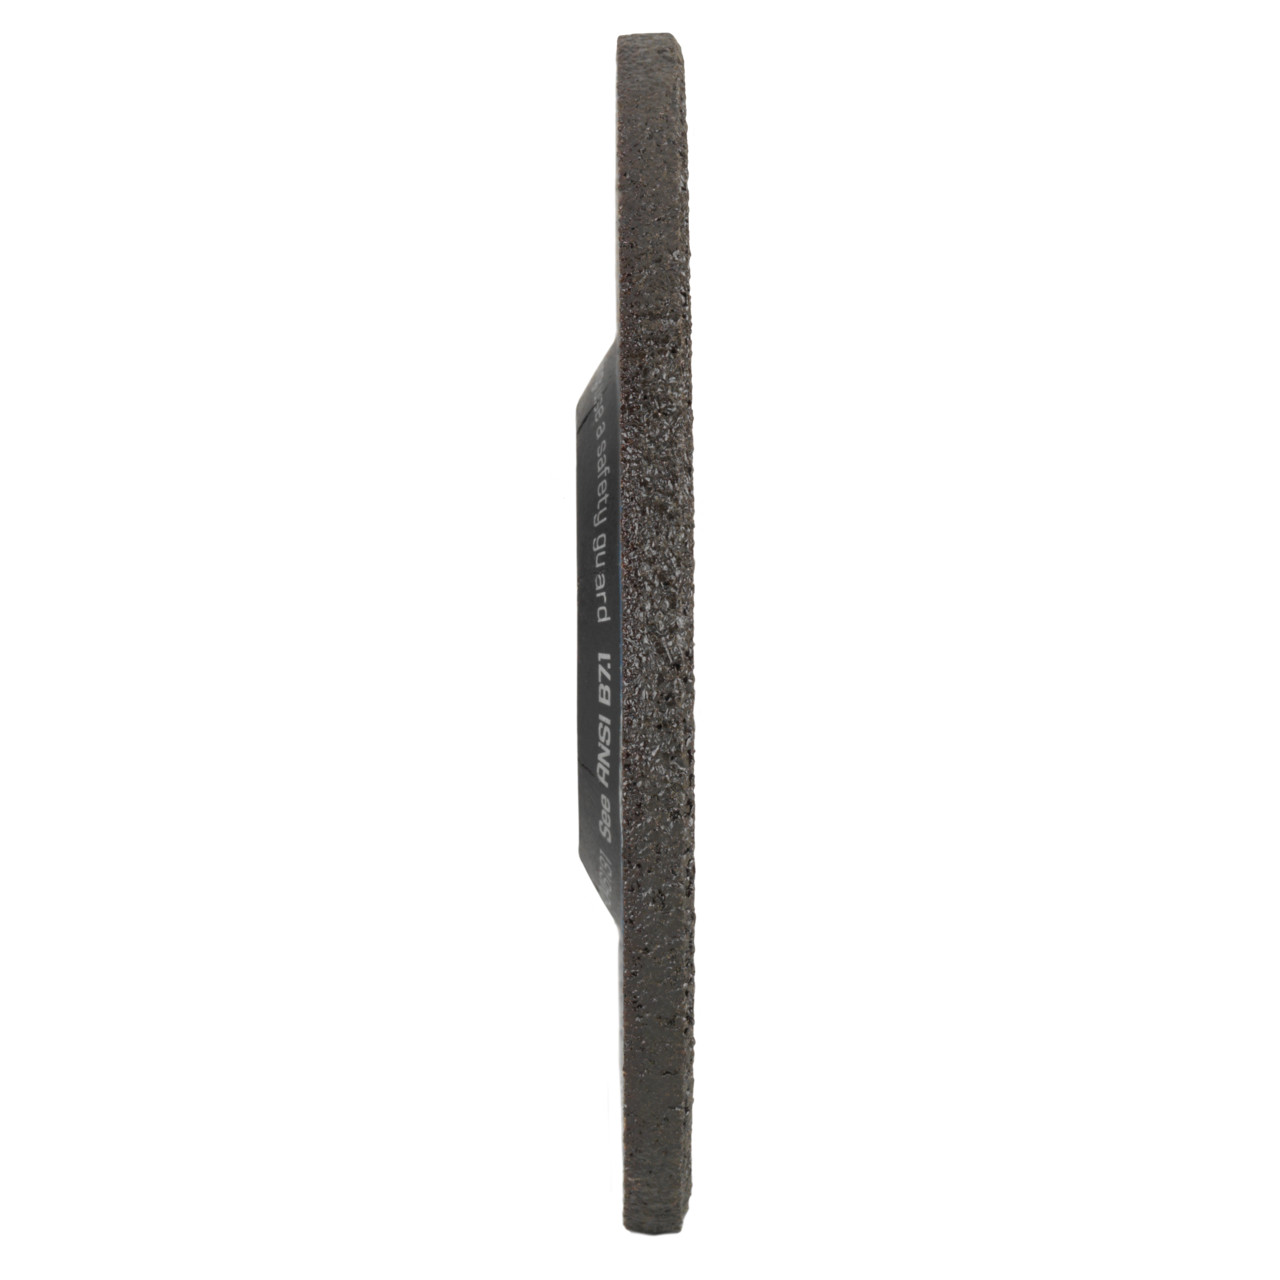 TYROLIT slijpschijf DxUxH 230x7x22,23 2in1 voor staal en roestvrij staal, vorm: 27 - offset-uitvoering, Art. 34046134